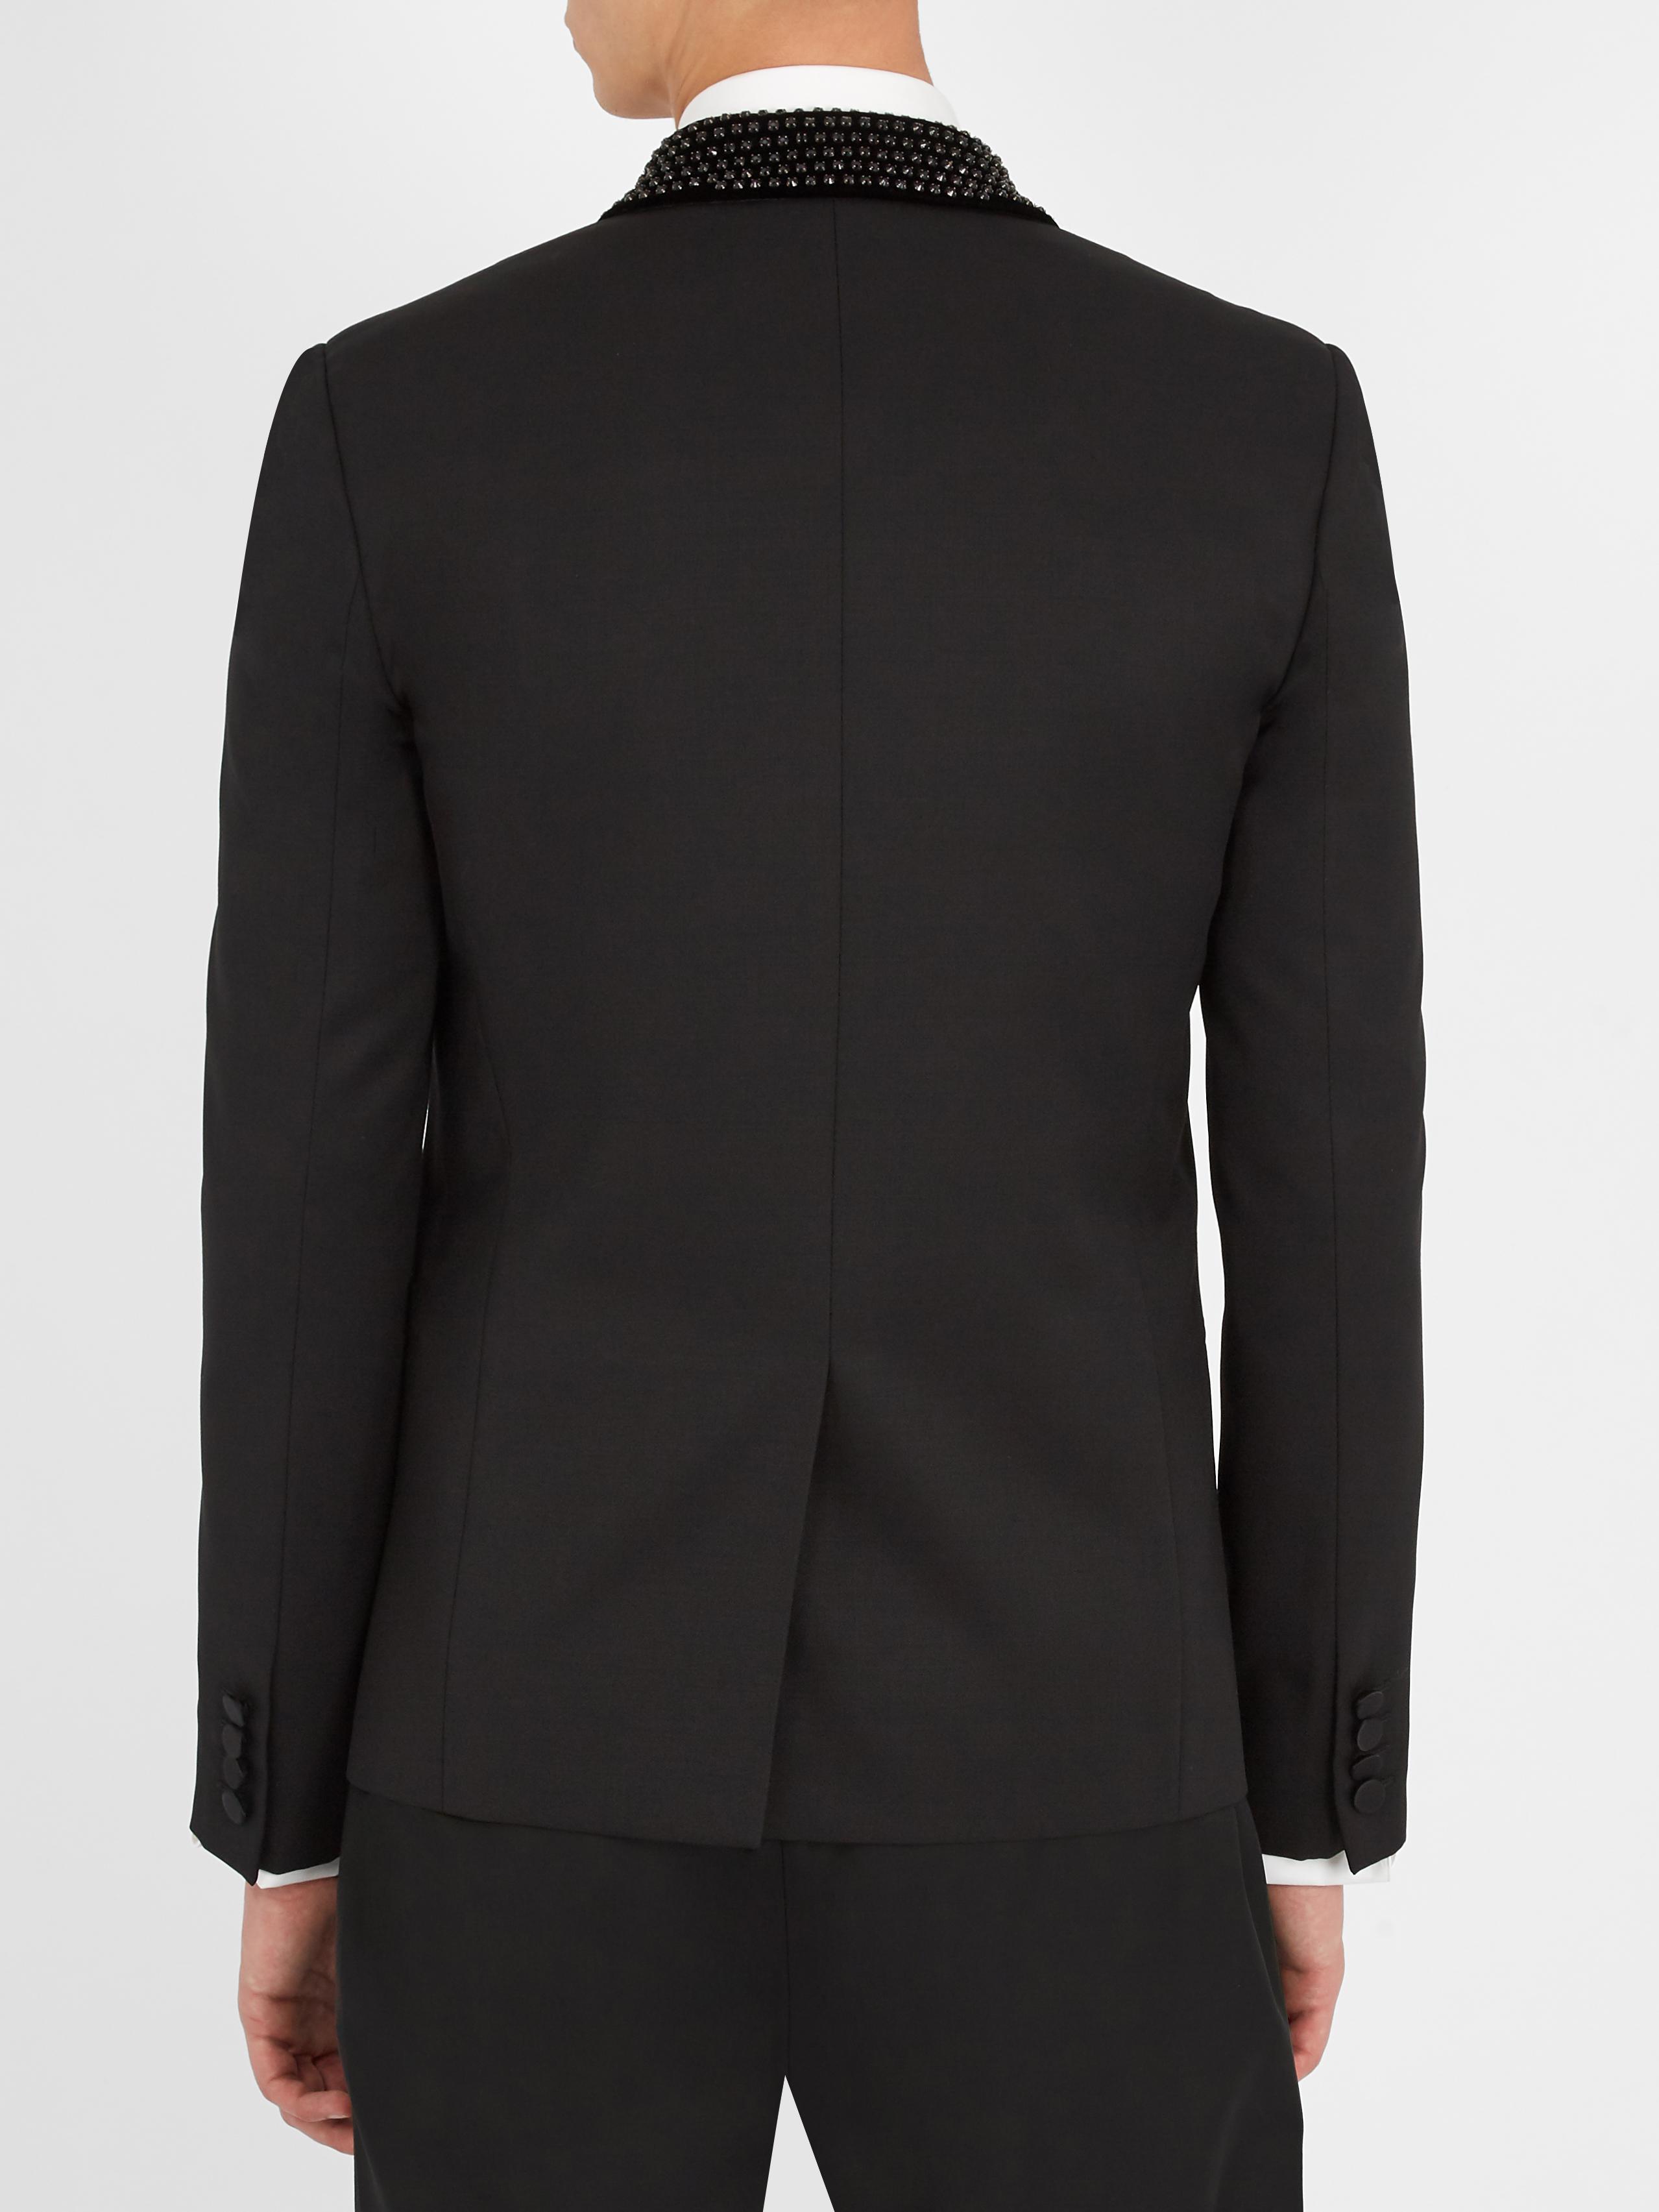 Saint Laurent Crystal-embellished Wool Tuxedo Jacket in Black for Men ...